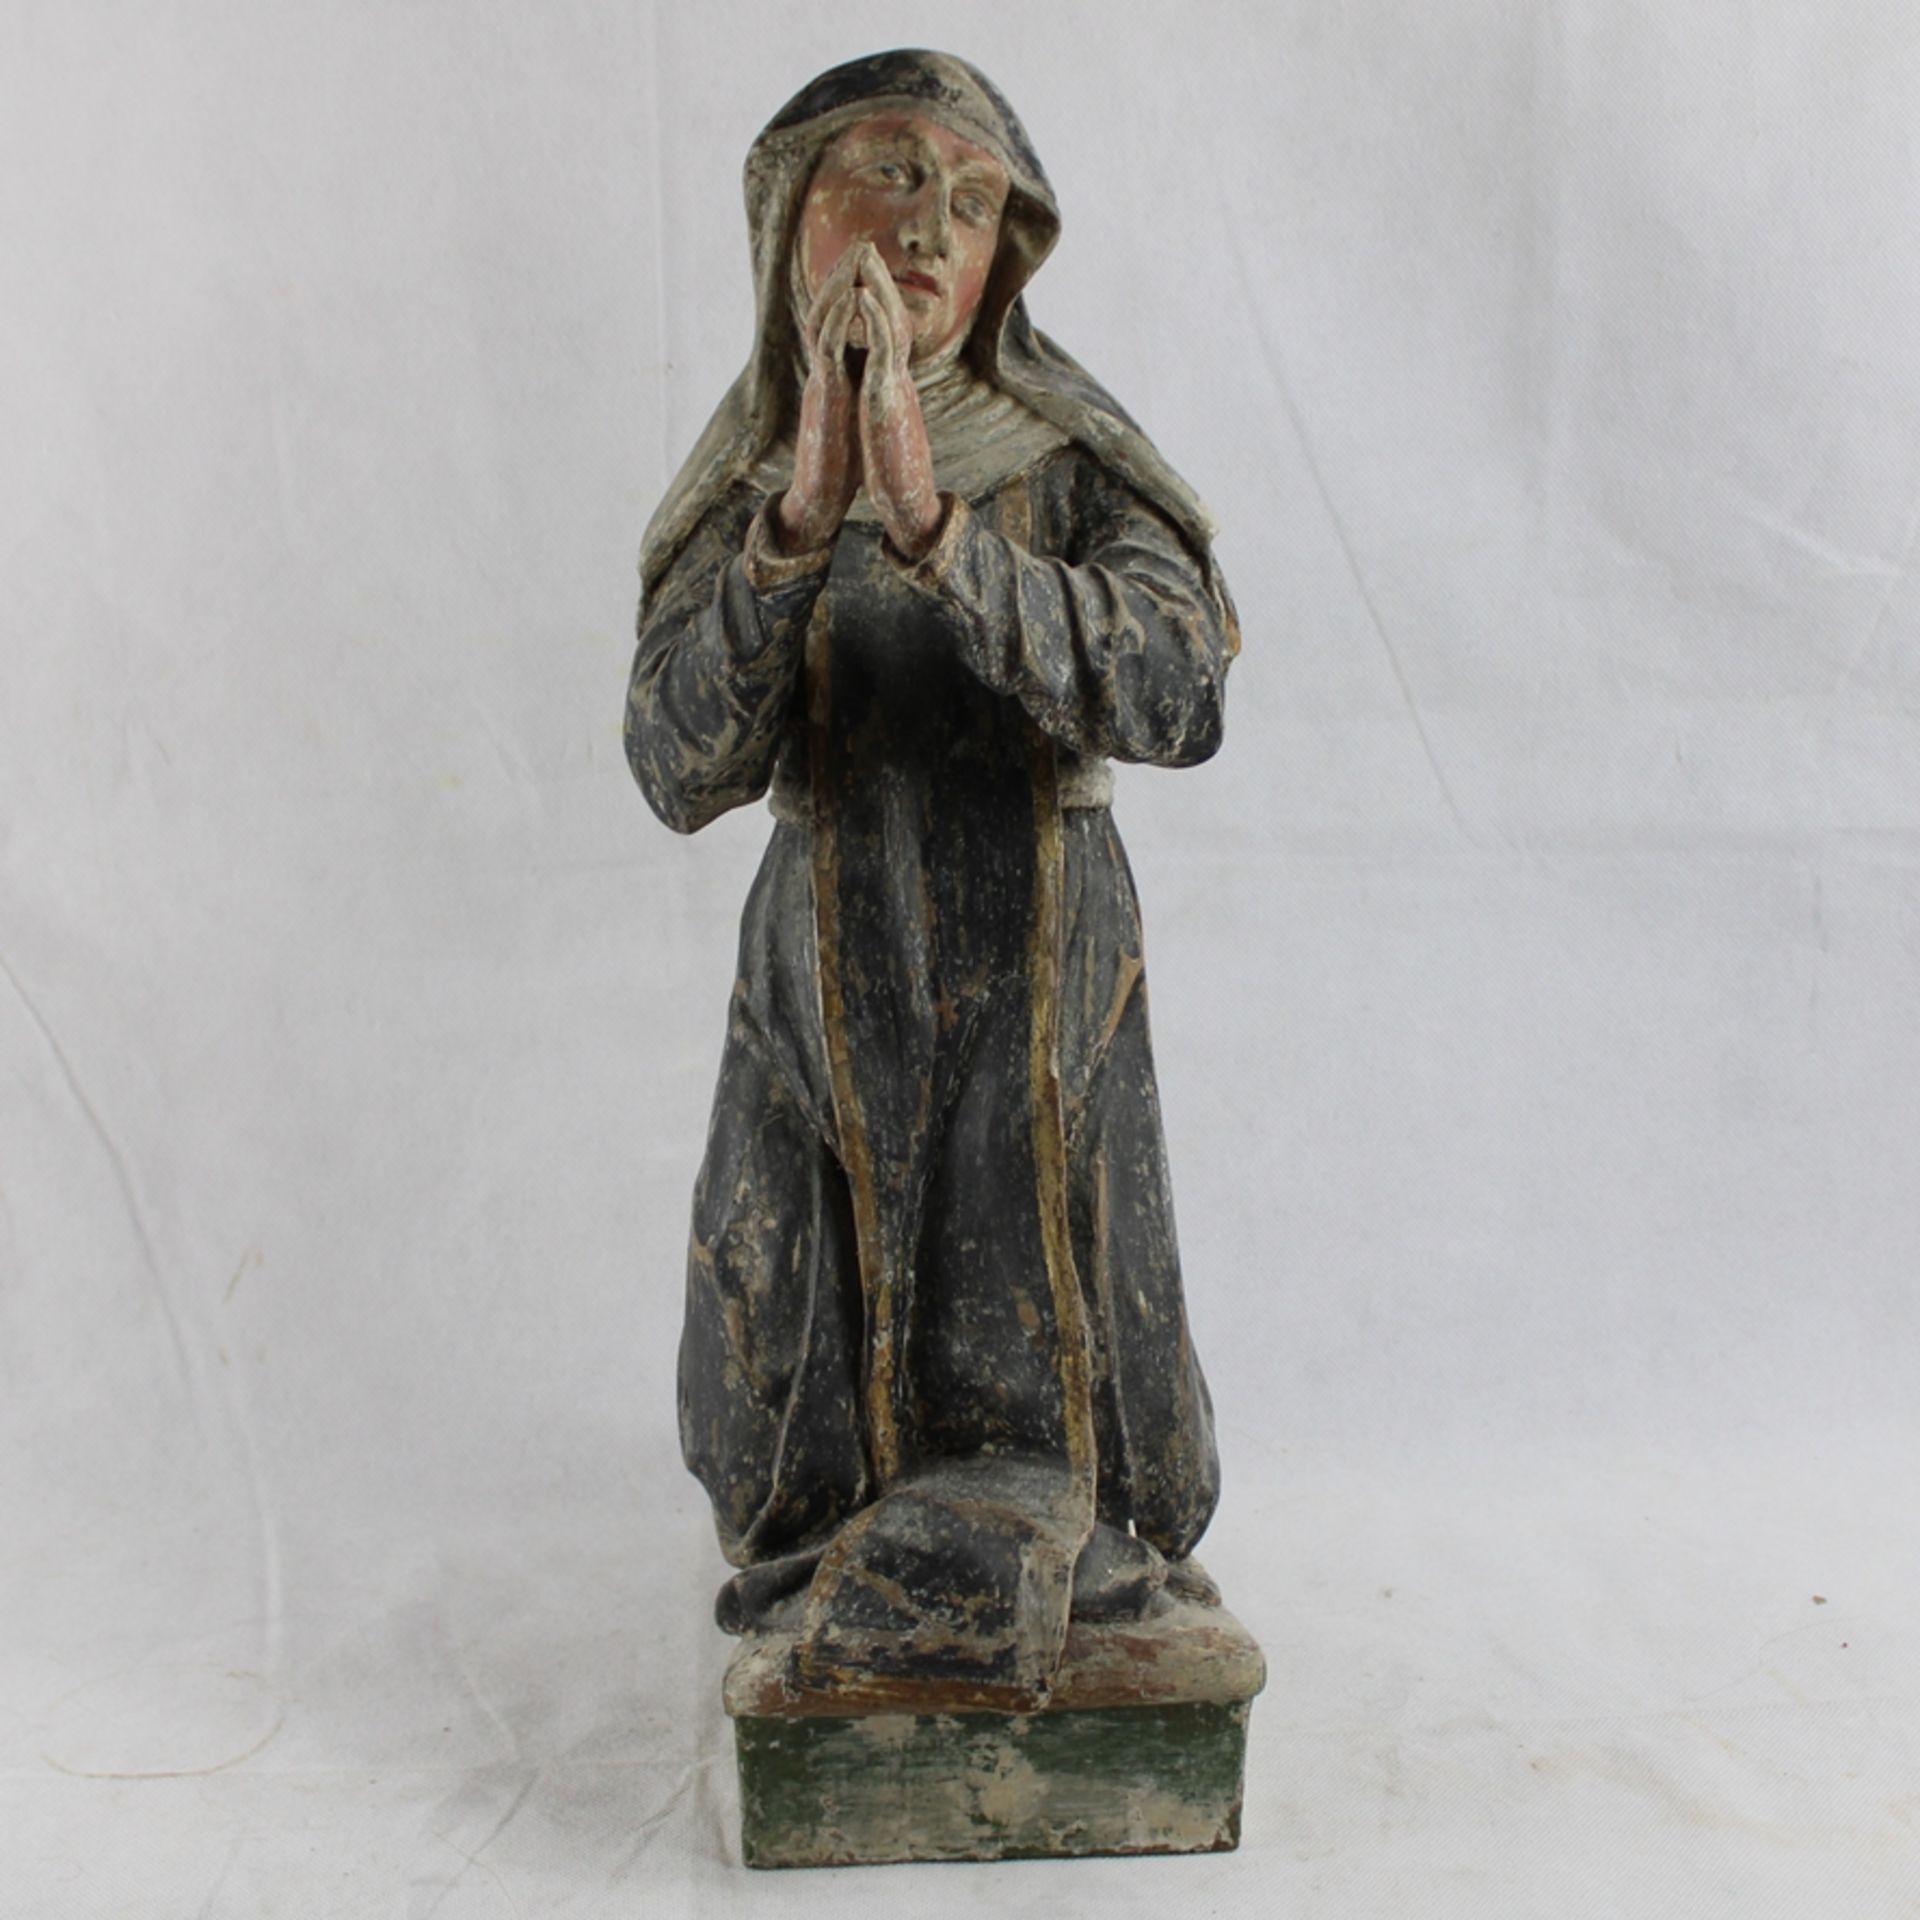 Bernadette Soubirous, Nonne knieend Holz geschnitzt u. bemalt ca. 45 cm, Altersspuren